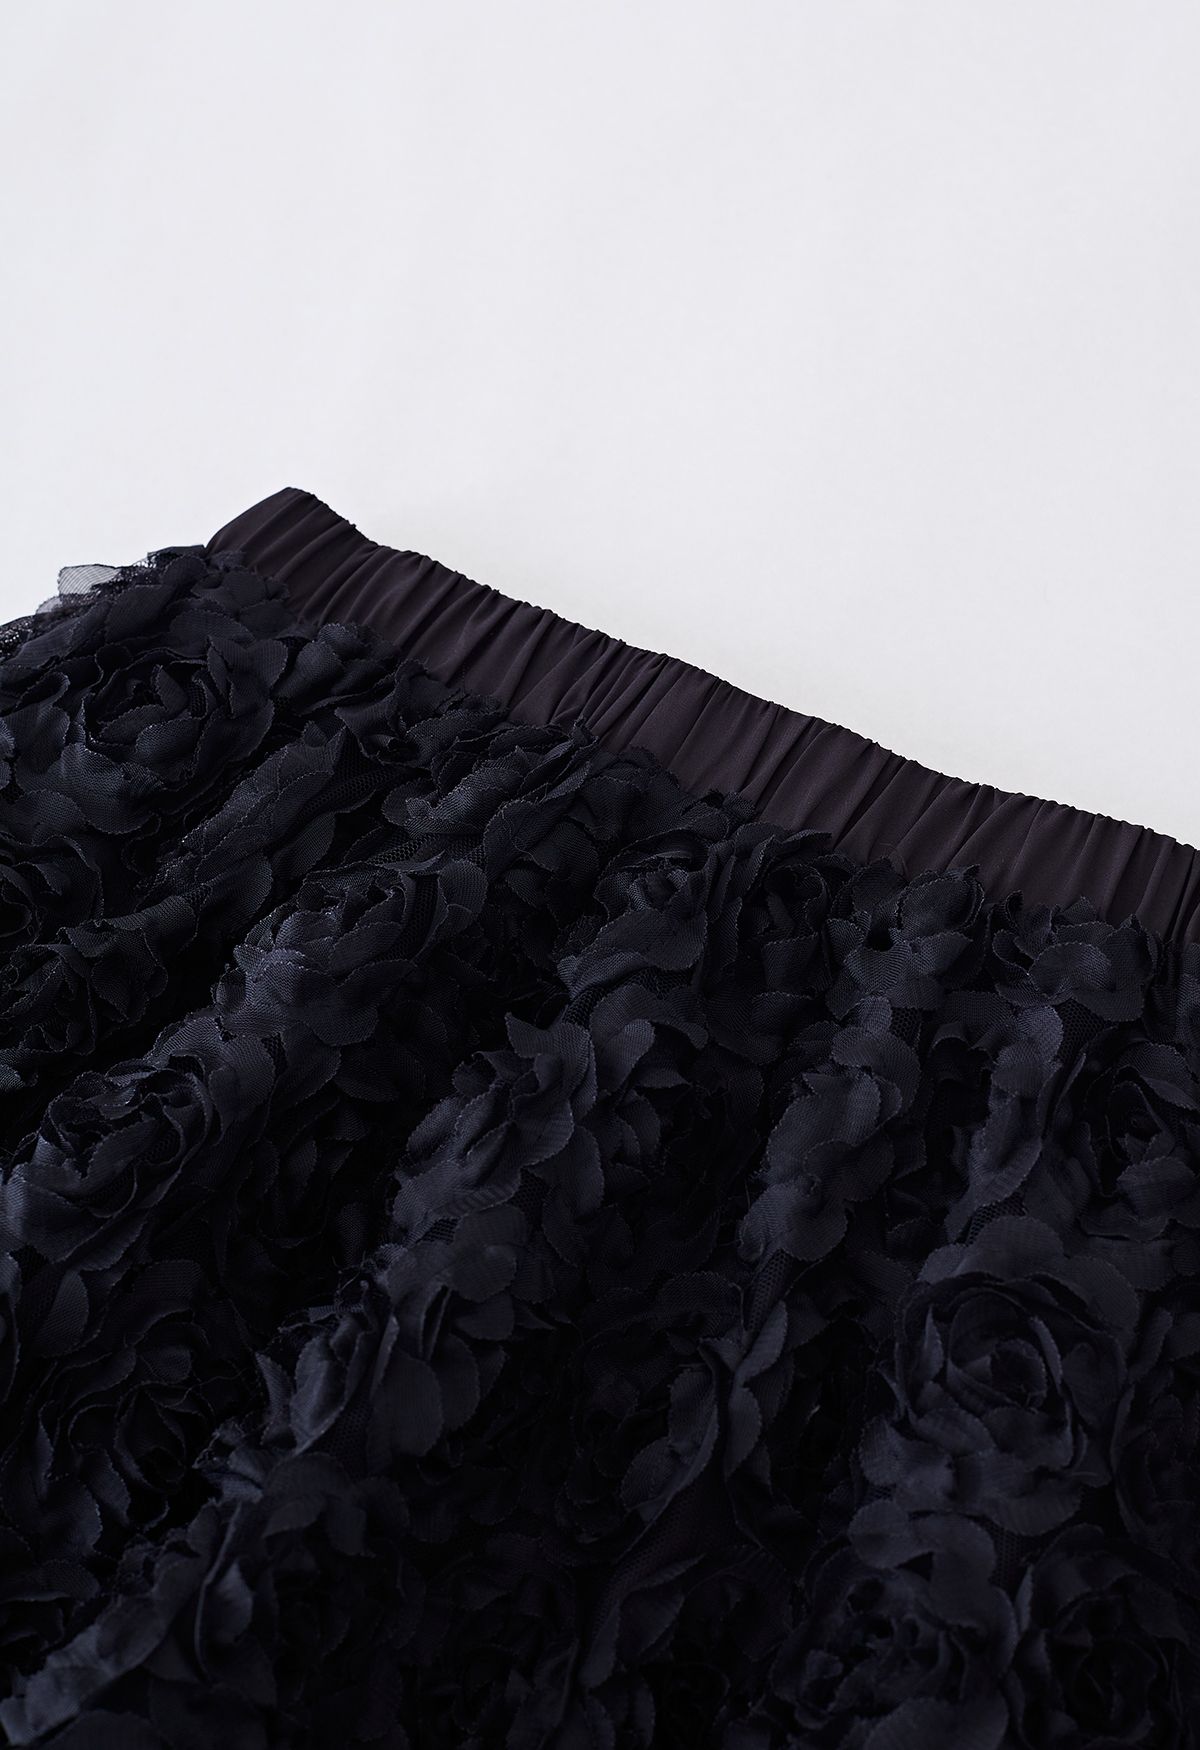 3D Black Rose Mesh Tulle Skirt